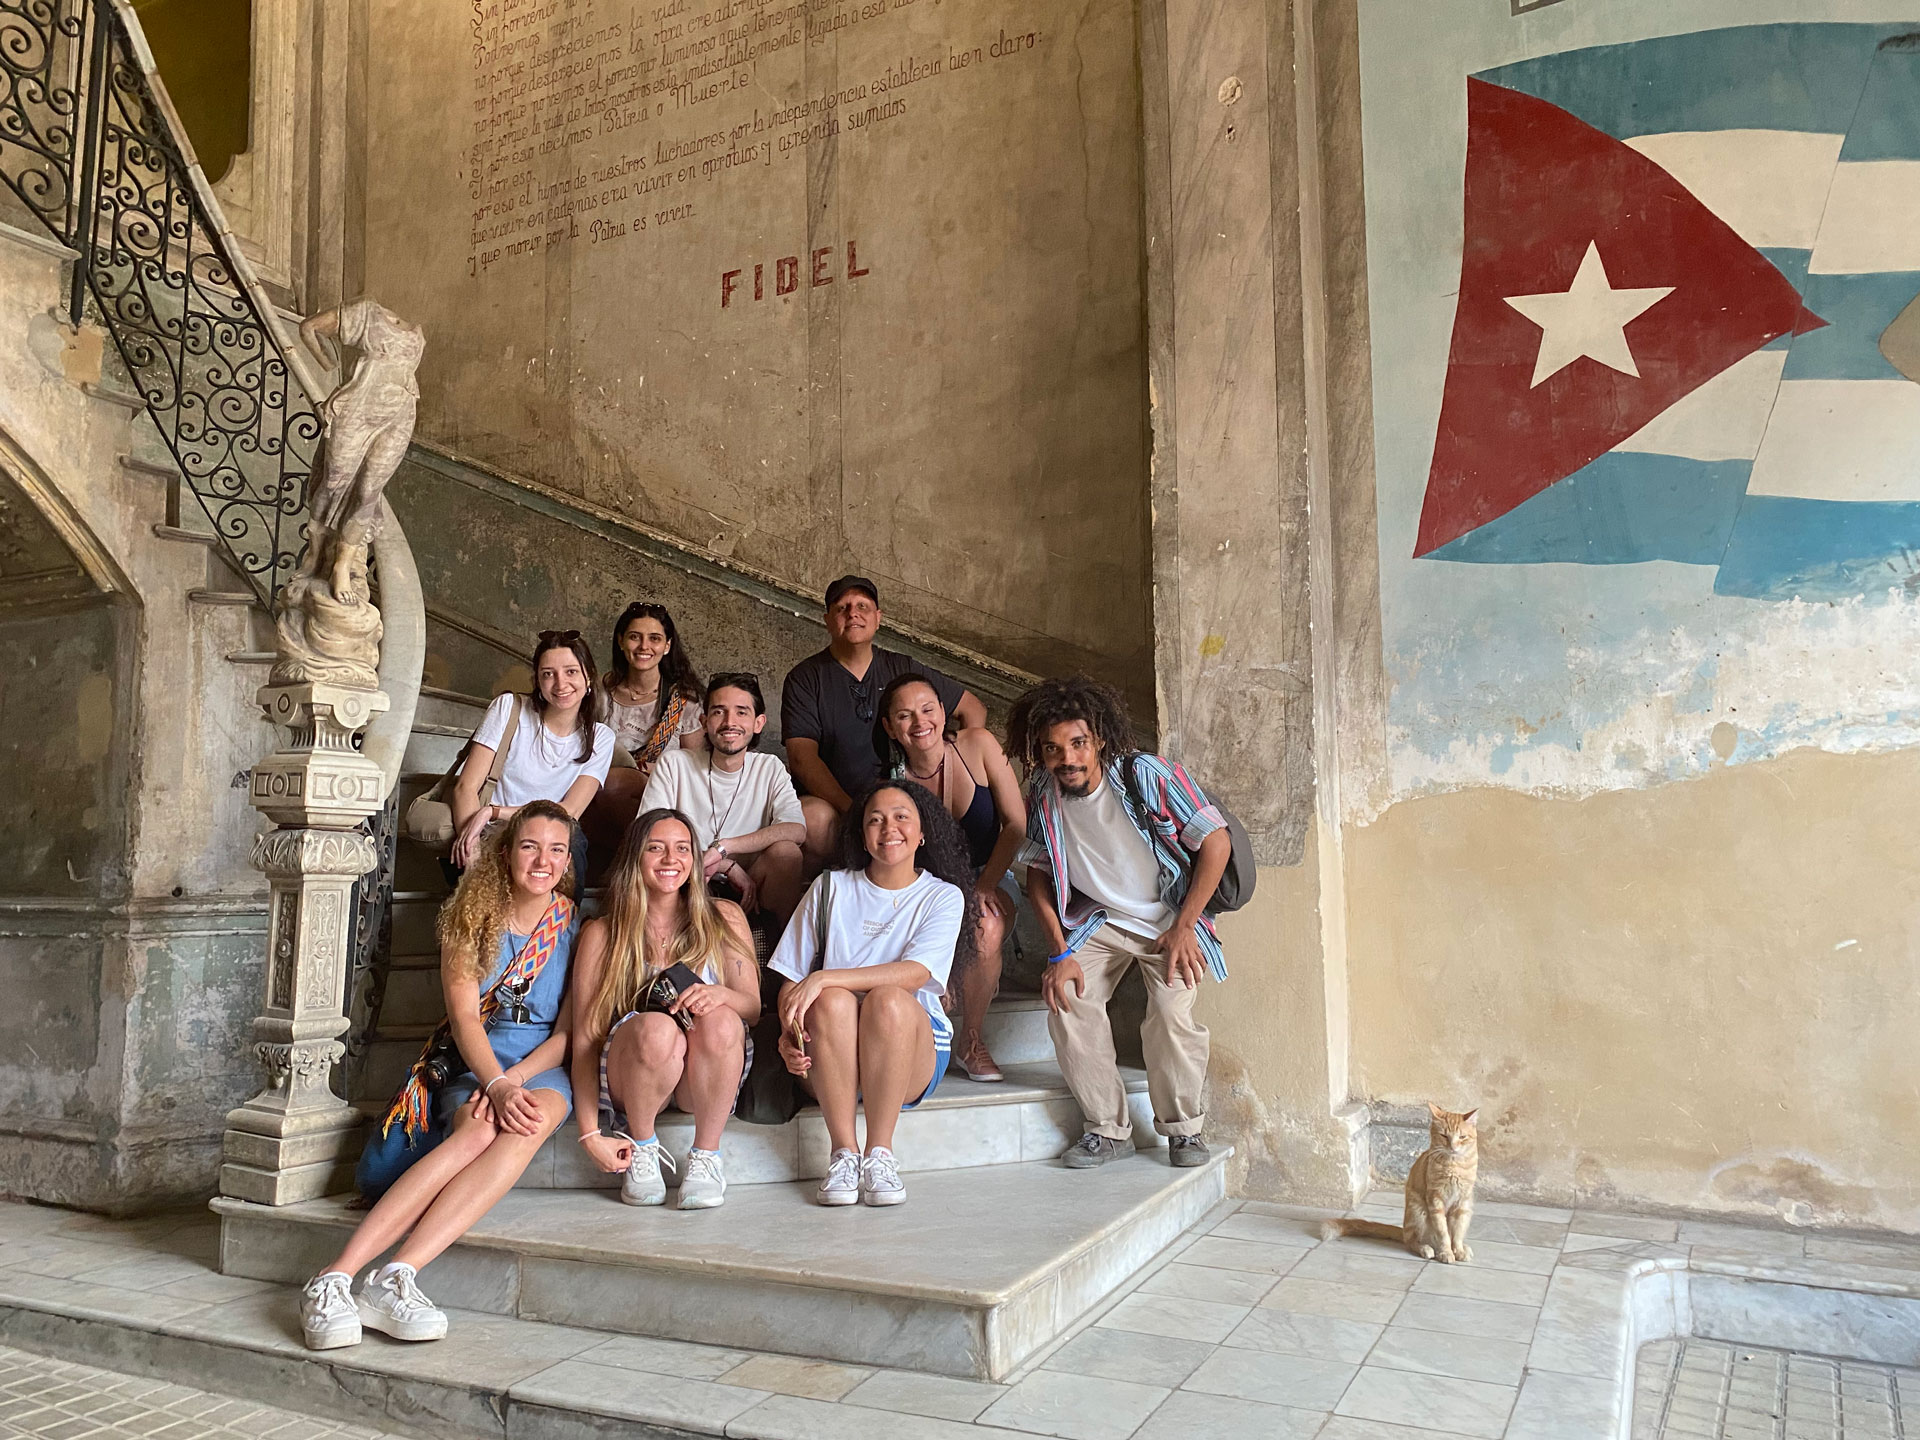 Segundo viaje de estudios: Semillero de arte en espacio público y memoria colectiva Colombia – Cuba